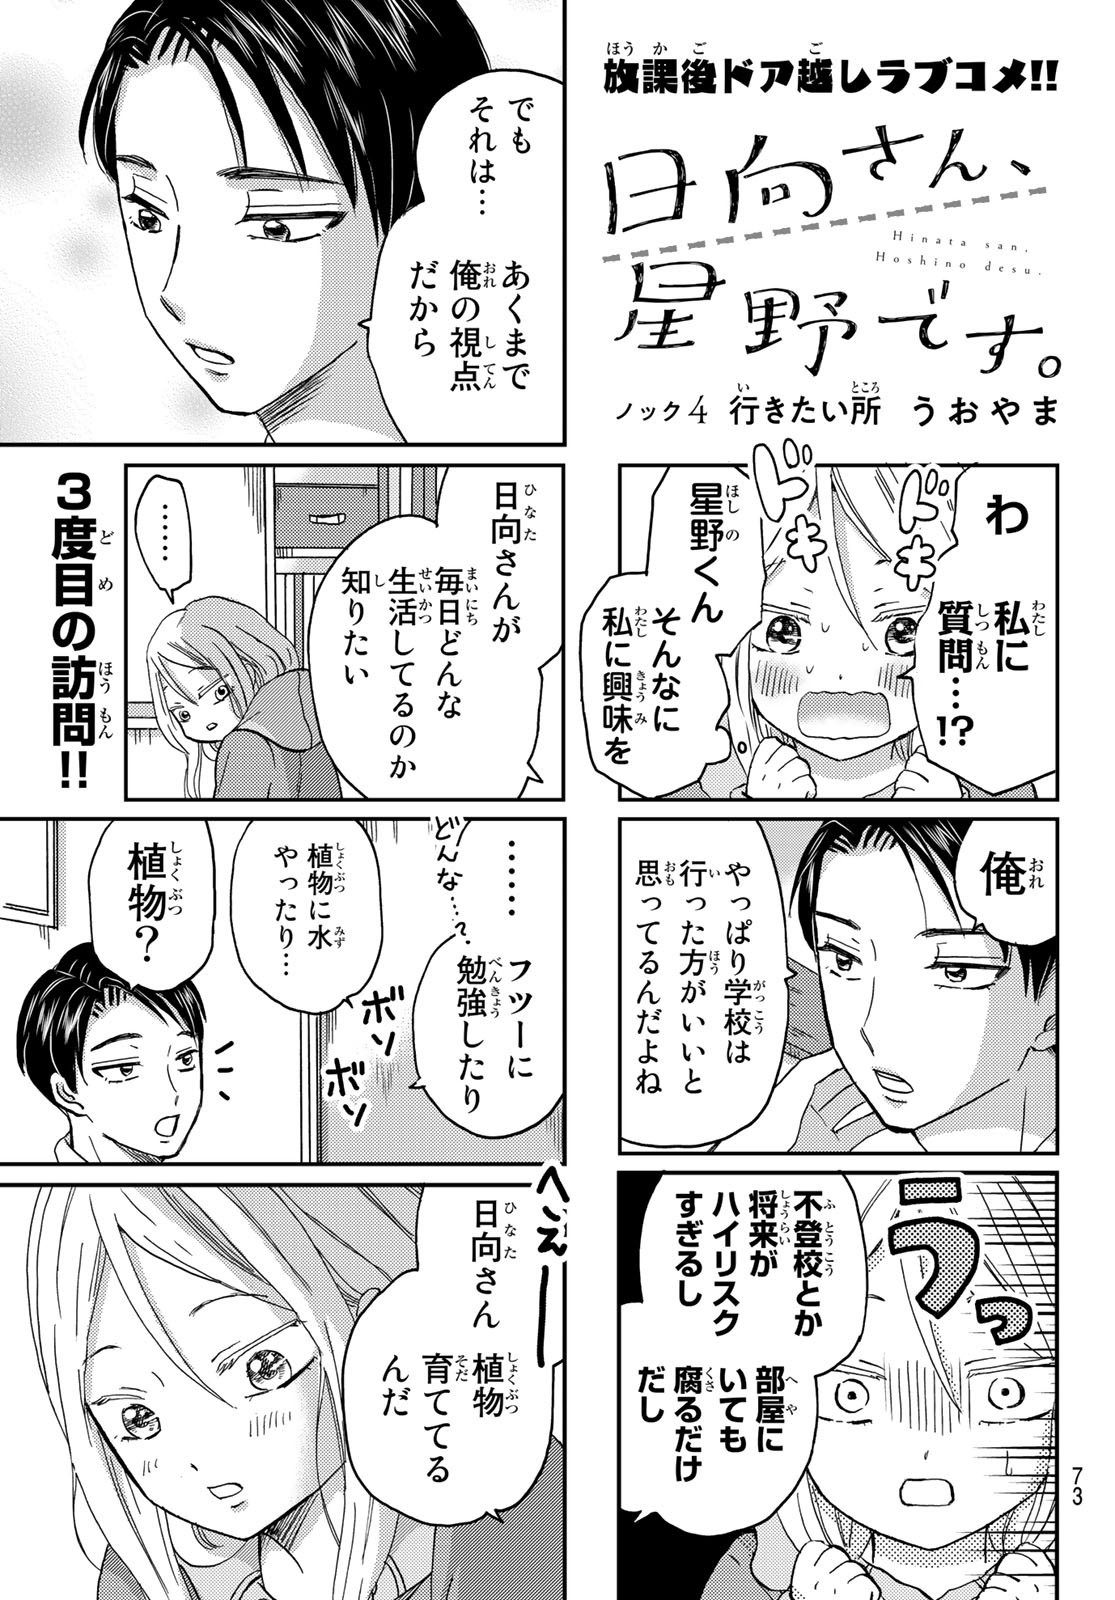 Hinata-san, Hoshino desu. - Chapter 004 - Page 1